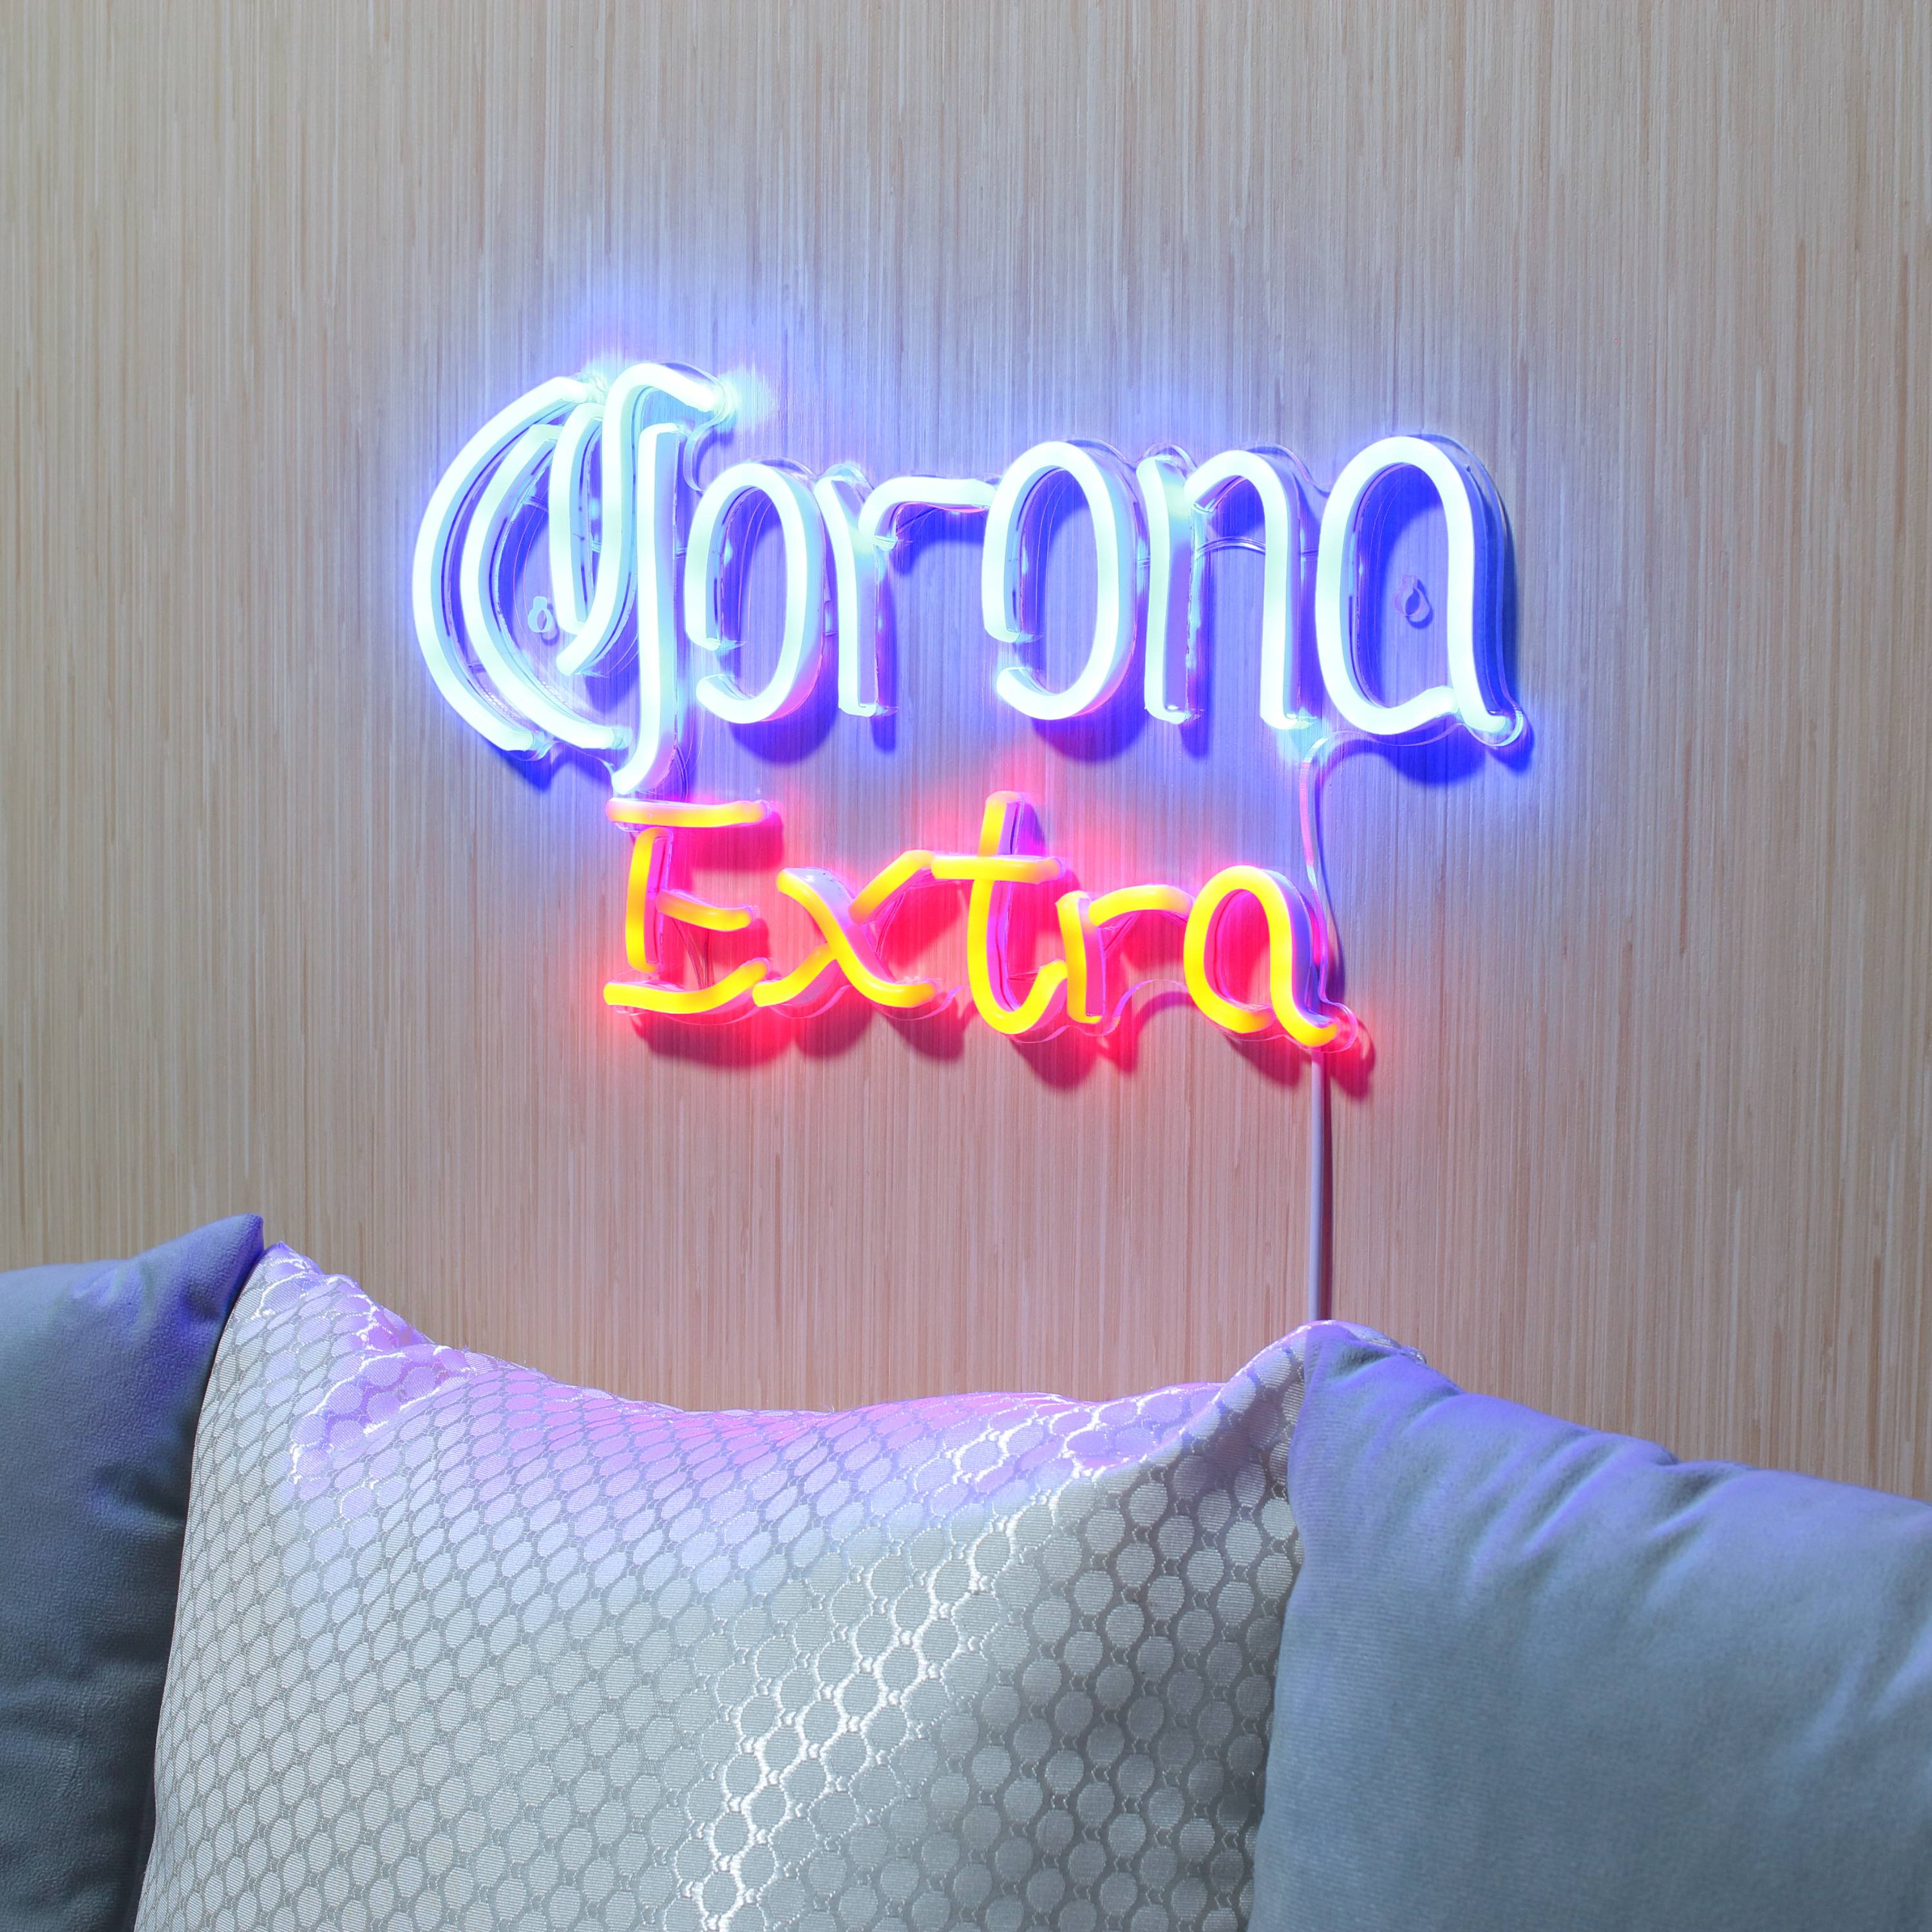 Corona Extra Large Flex Neon LED Sign